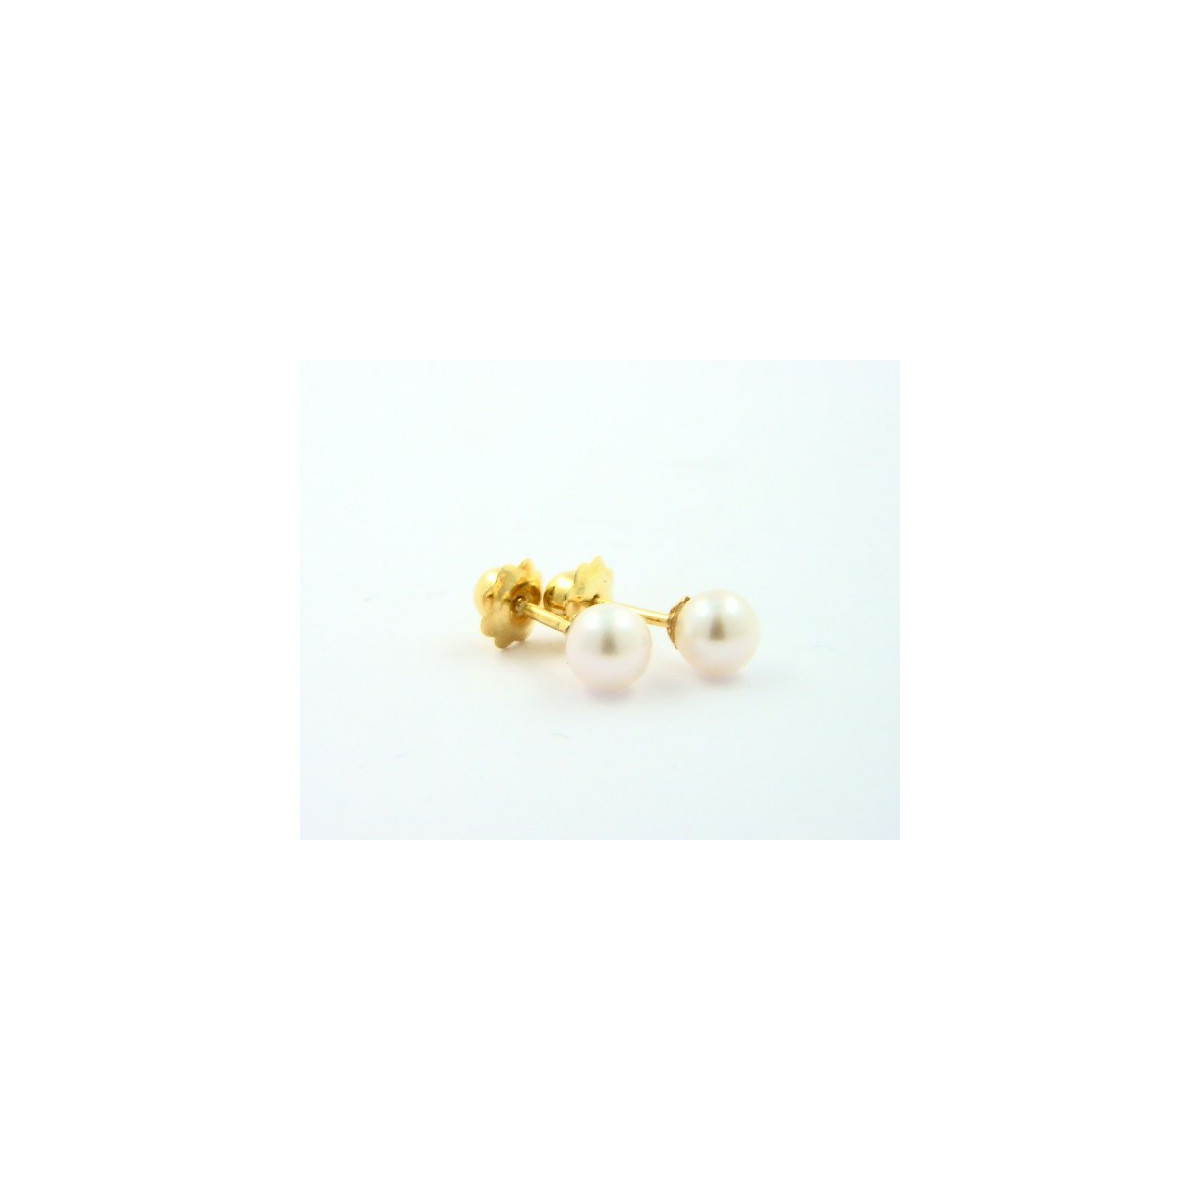 Pendientes oro 18k con perla